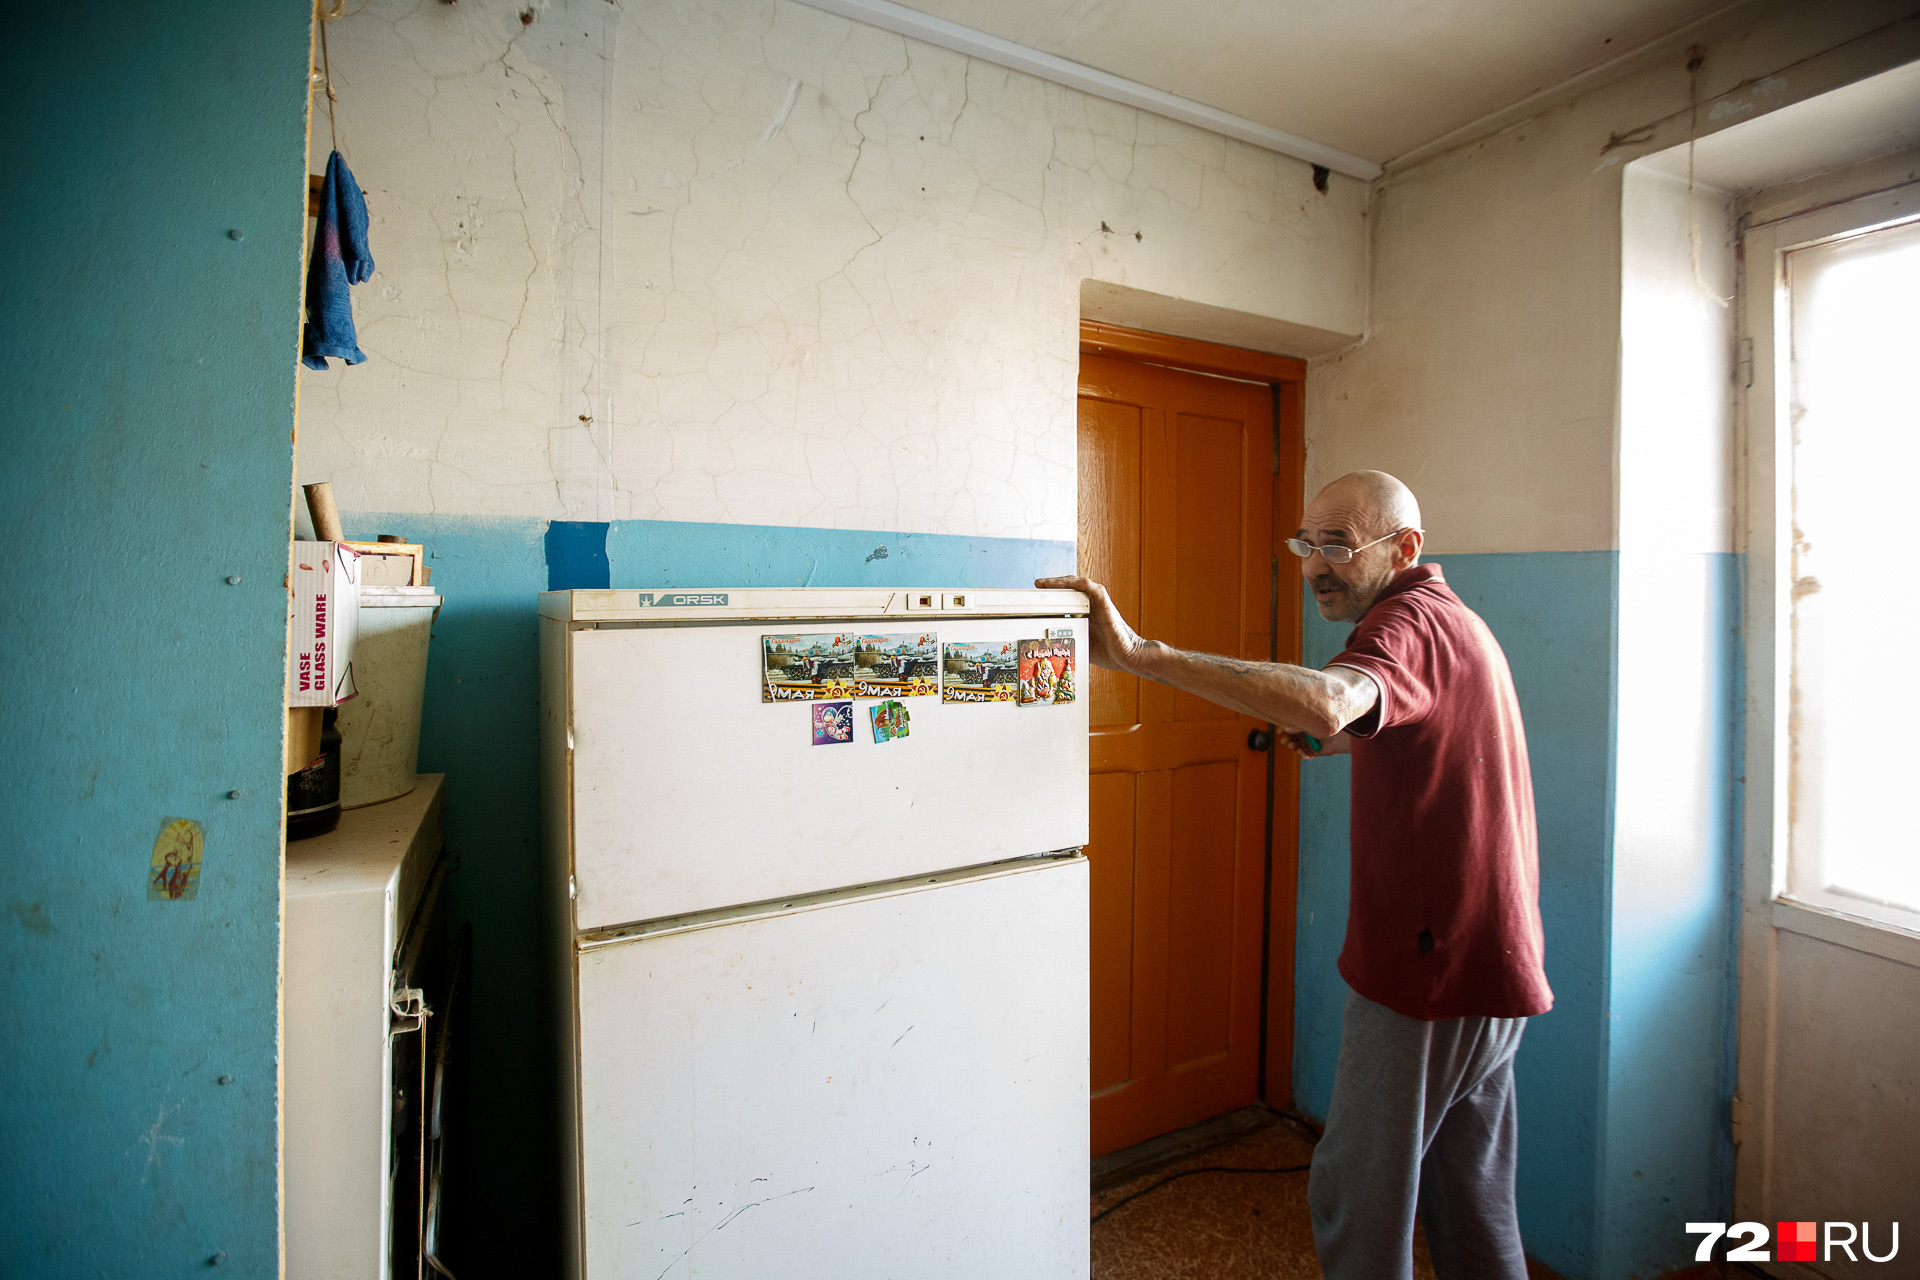 Это личный холодильник Геннадия. Работает только морозилка — ему хватает. Готовит мужчина в своей комнате, кухней он не пользуется. Но обязан платить за общее пространство наравне со всеми